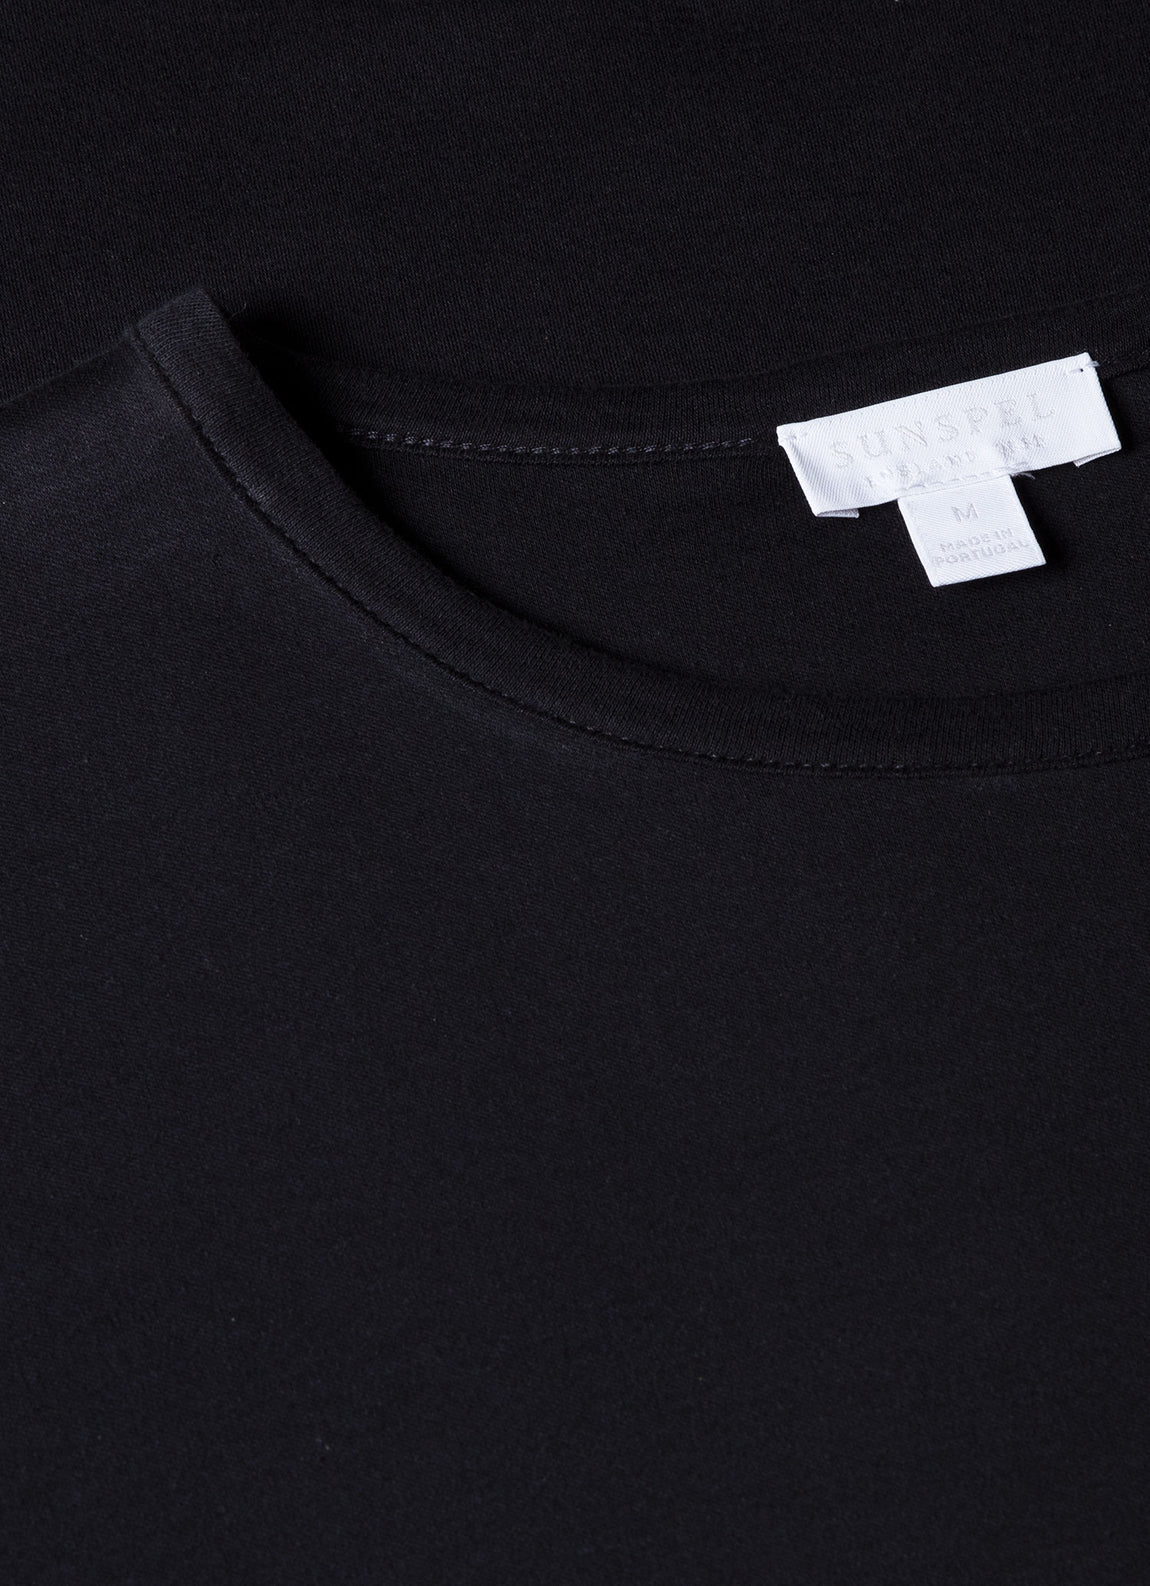 Men's Sea Island Cotton T-shirt in Black | Sunspel